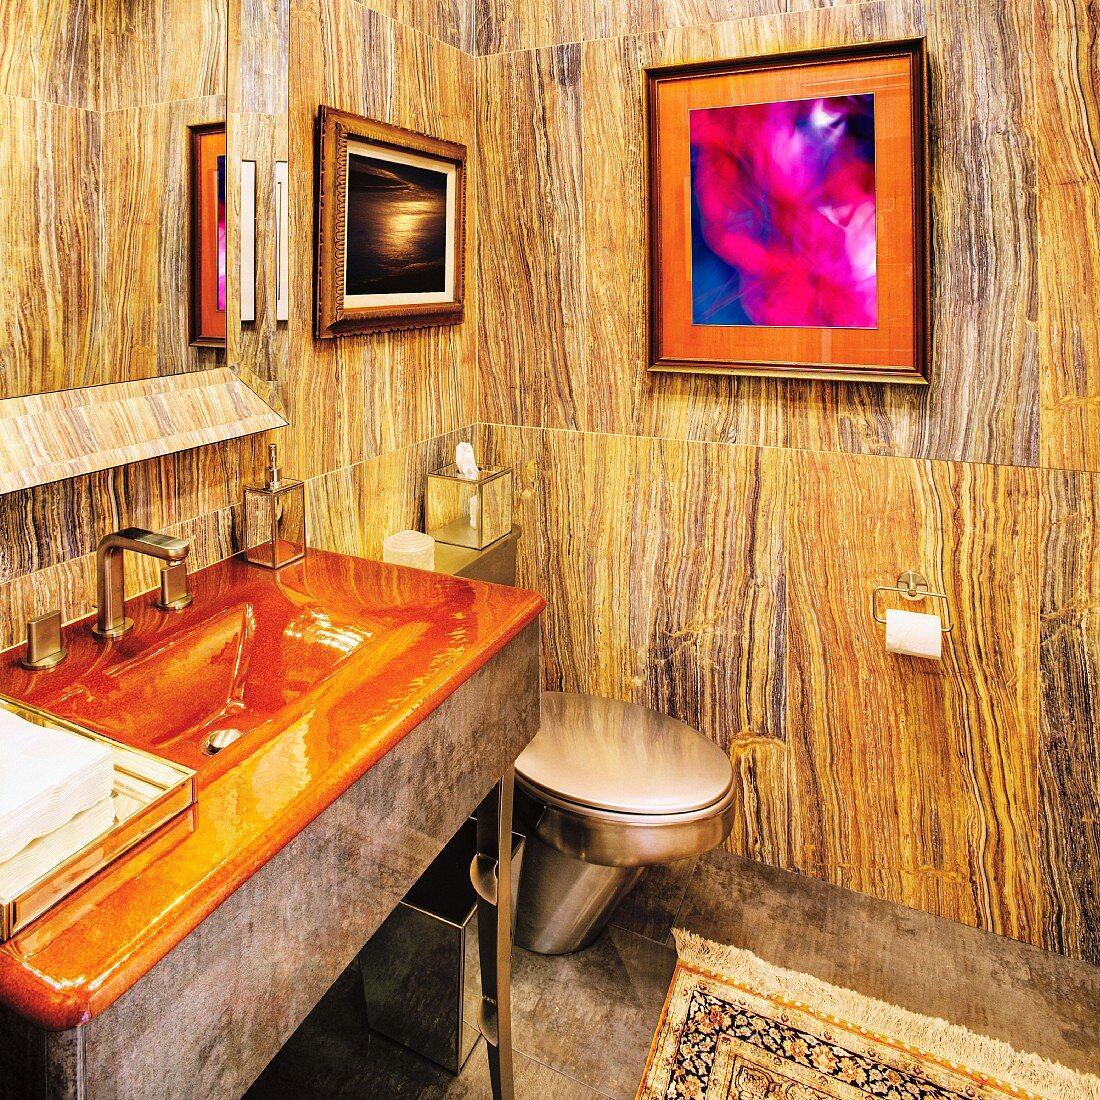 Bathroom Interior With a Wood Grain Decor